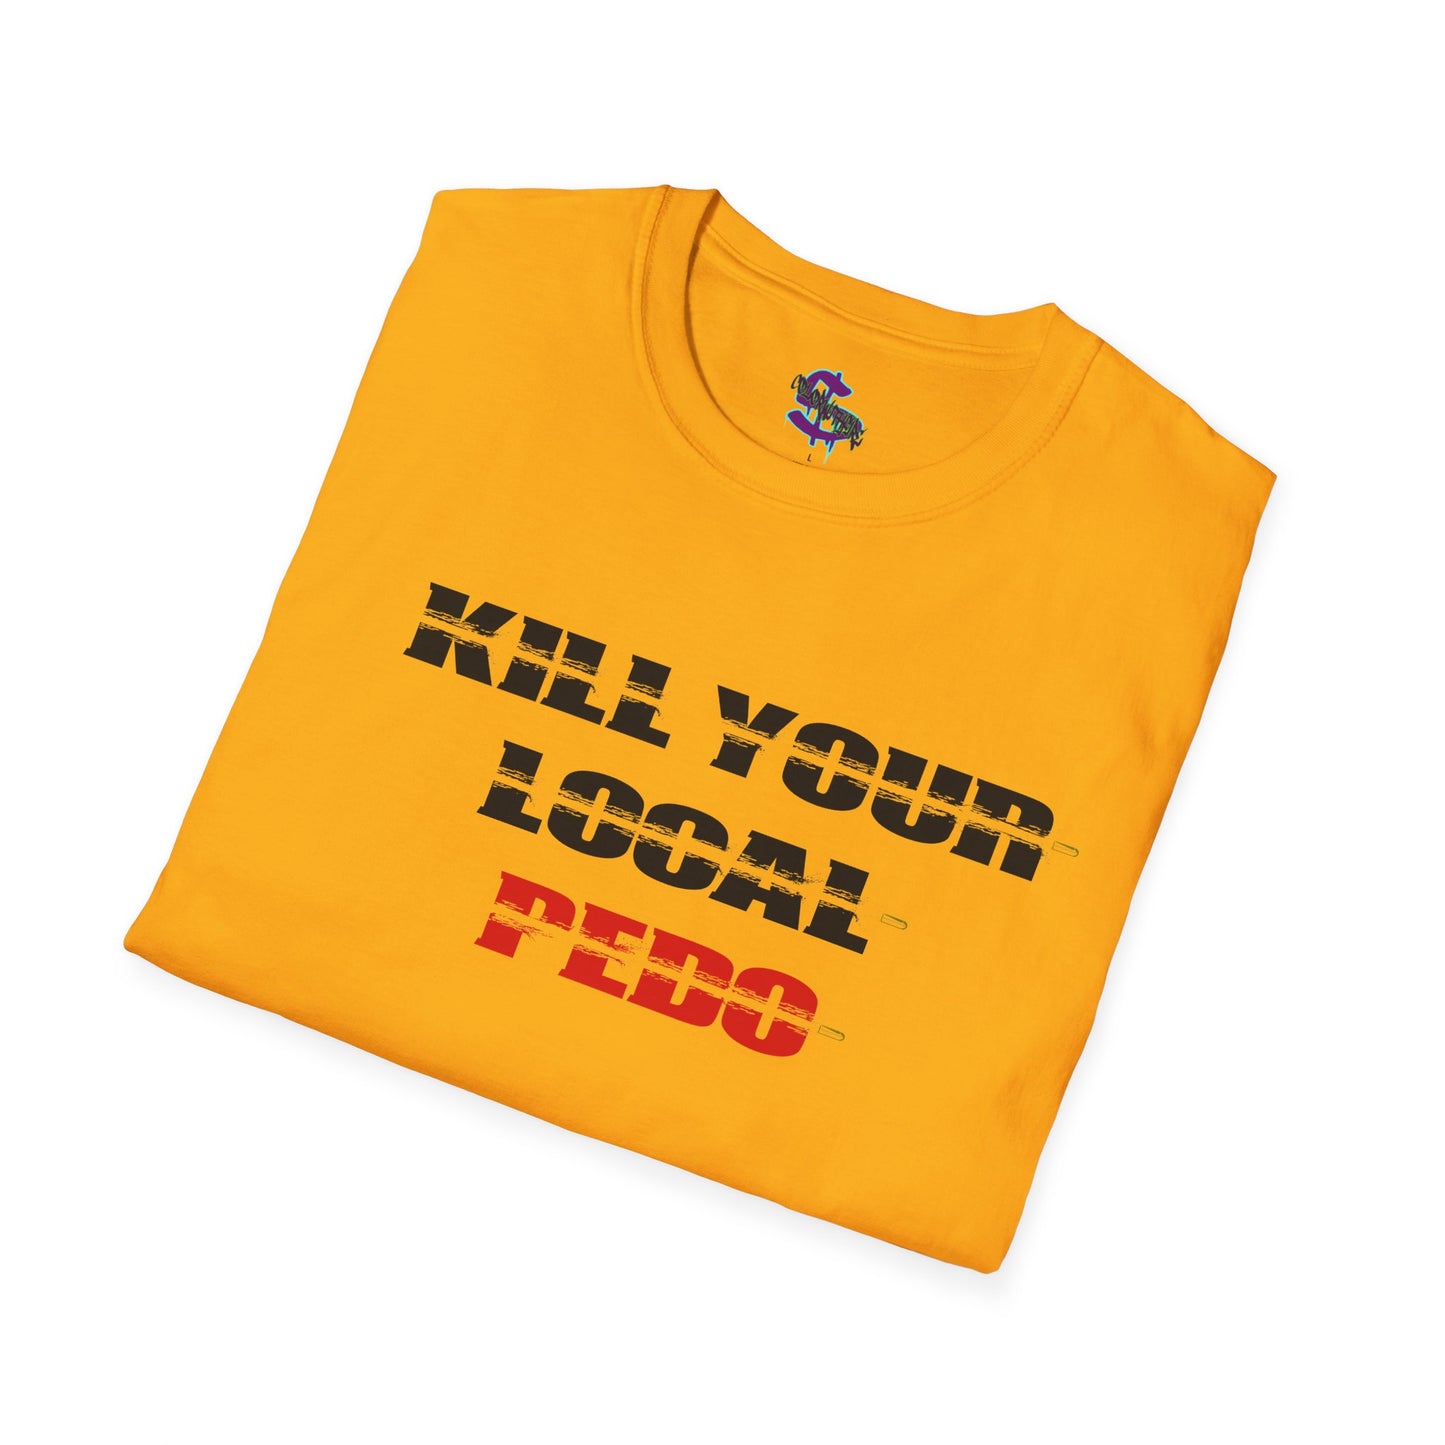 2 - Kill your local pedo